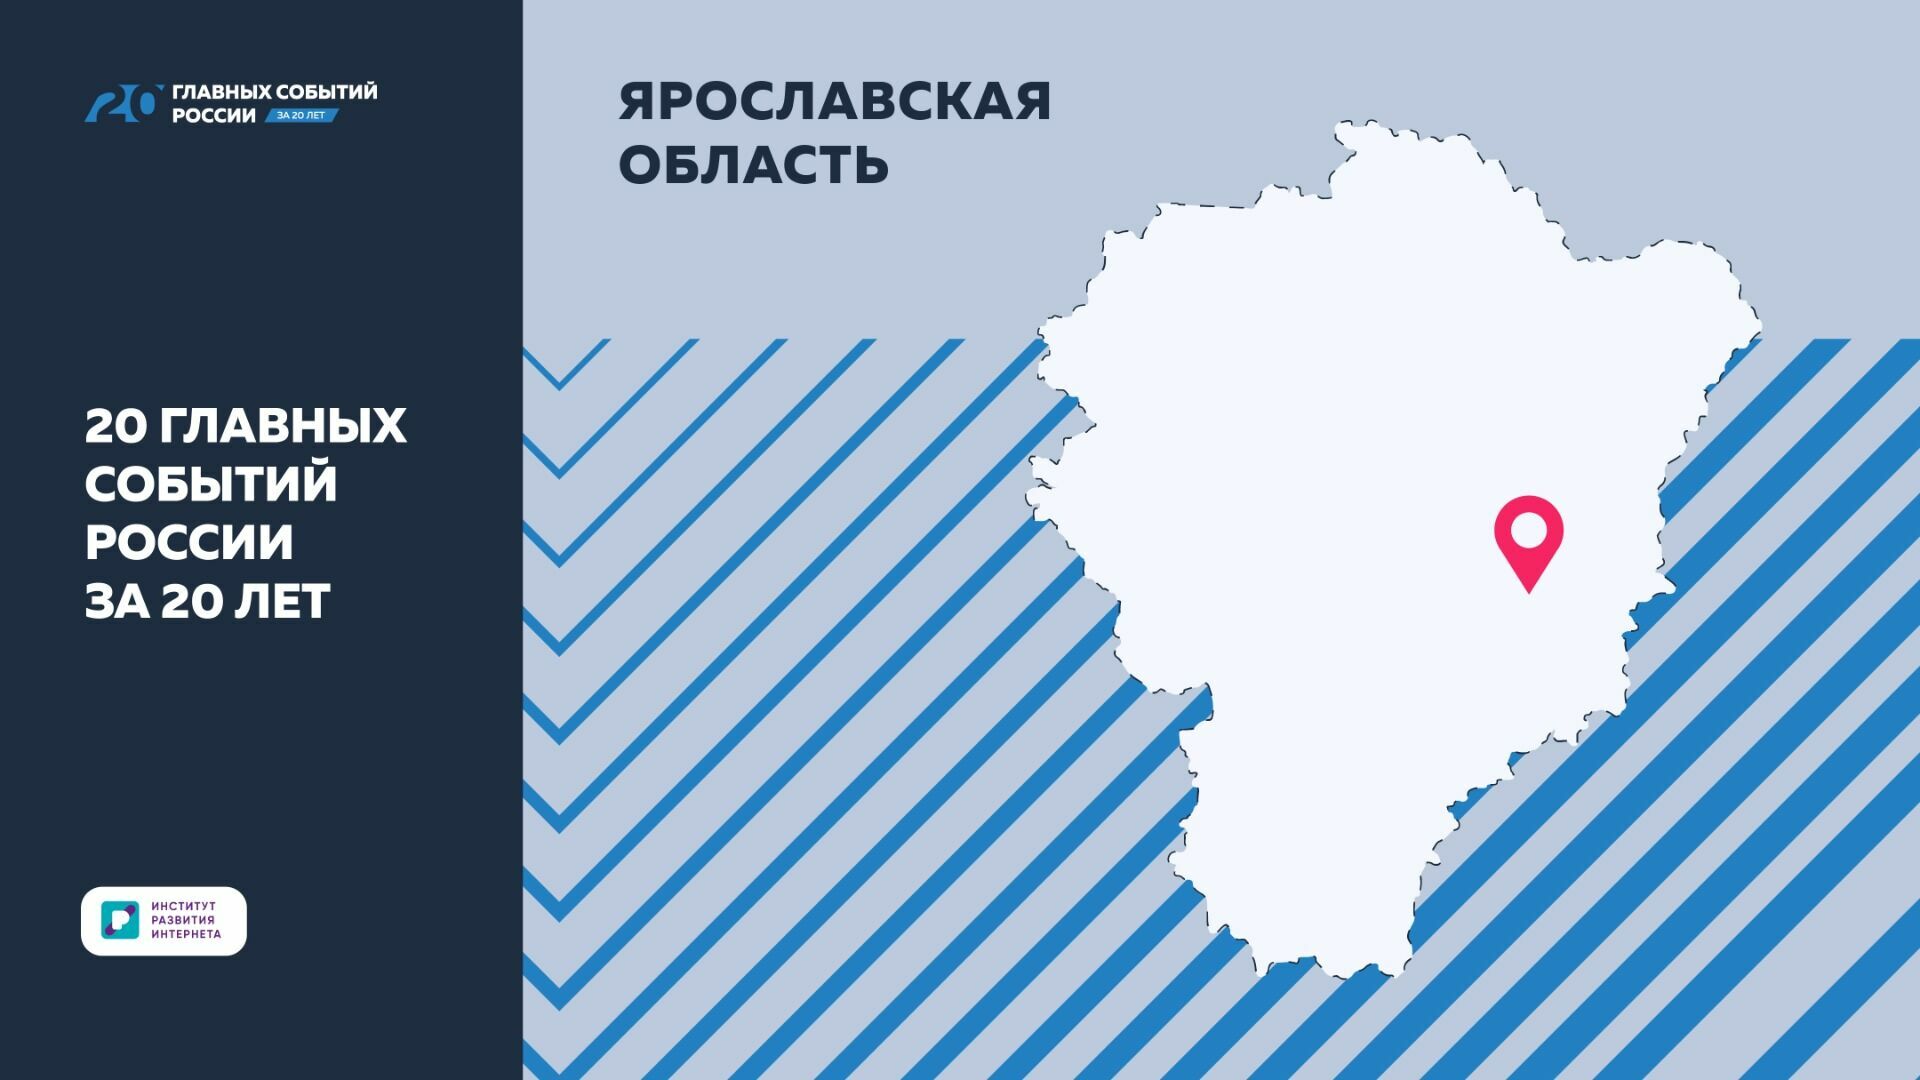 ИРИ отметил успехи Ярославской области за последние 20 лет в своем проекте